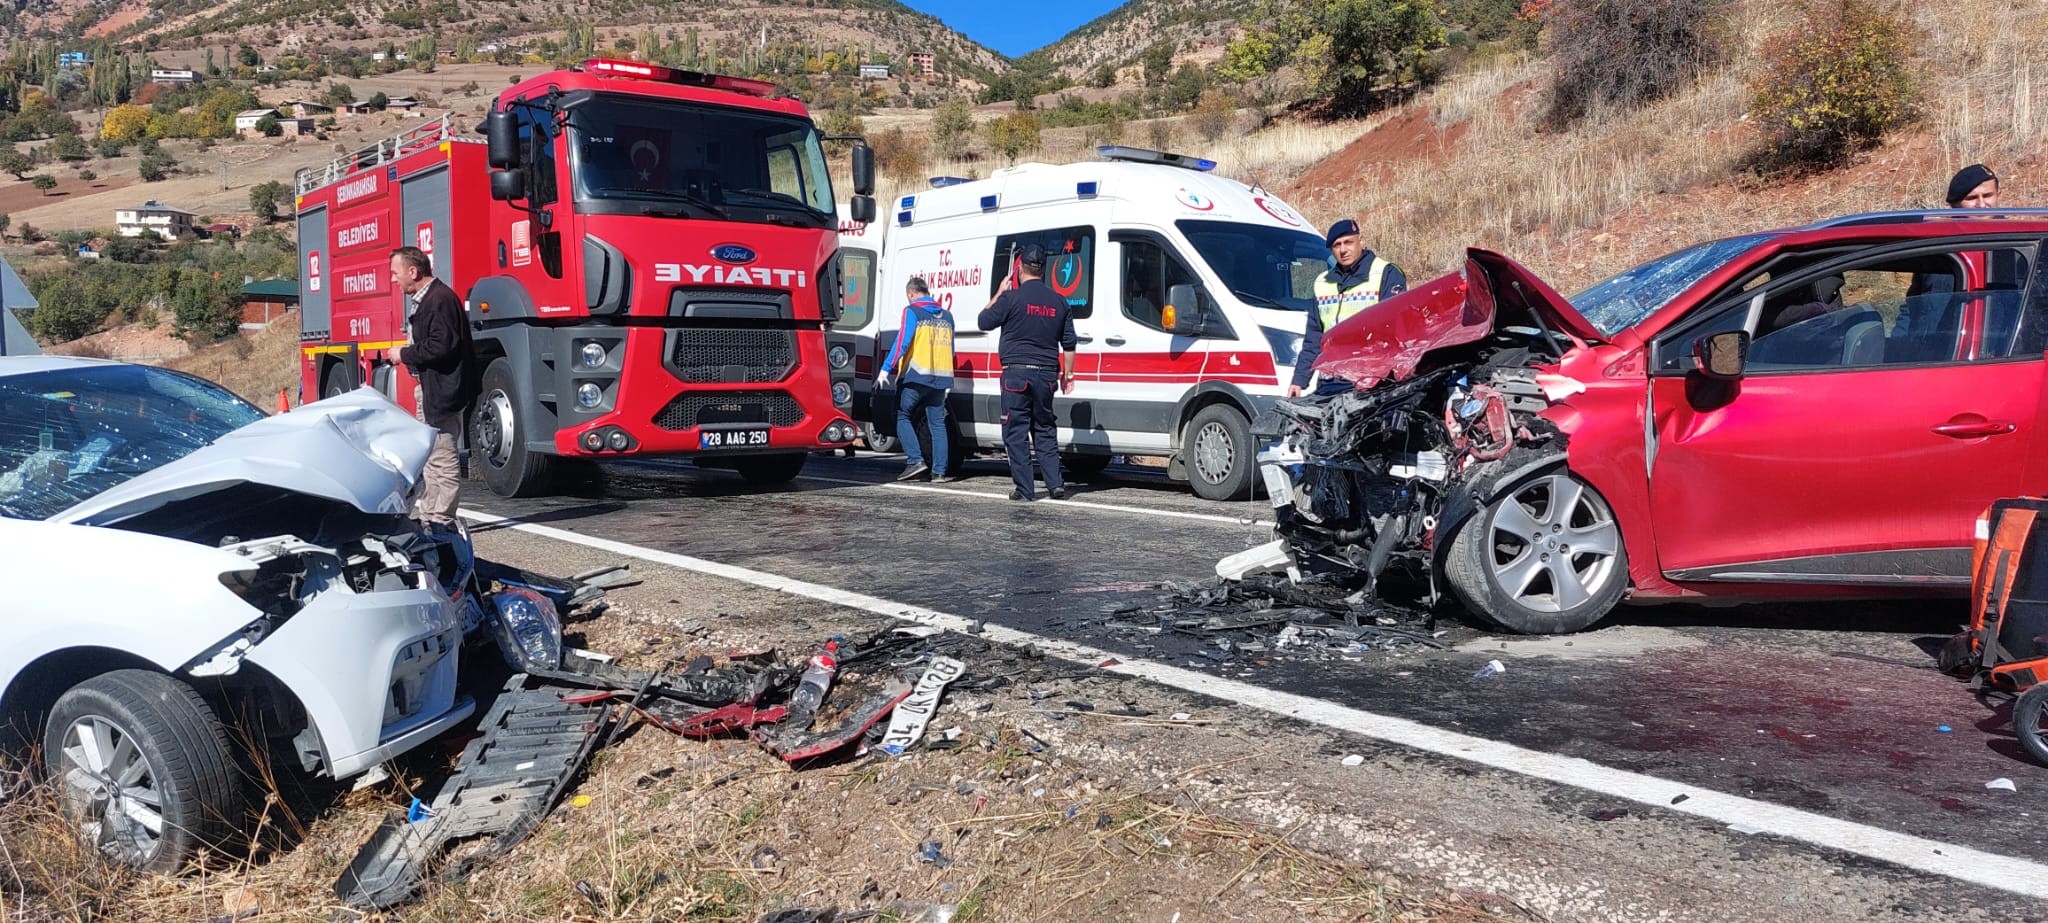 Giresun'da kaza: 5 kişi yaralanarak hastaneye kaldırıldı